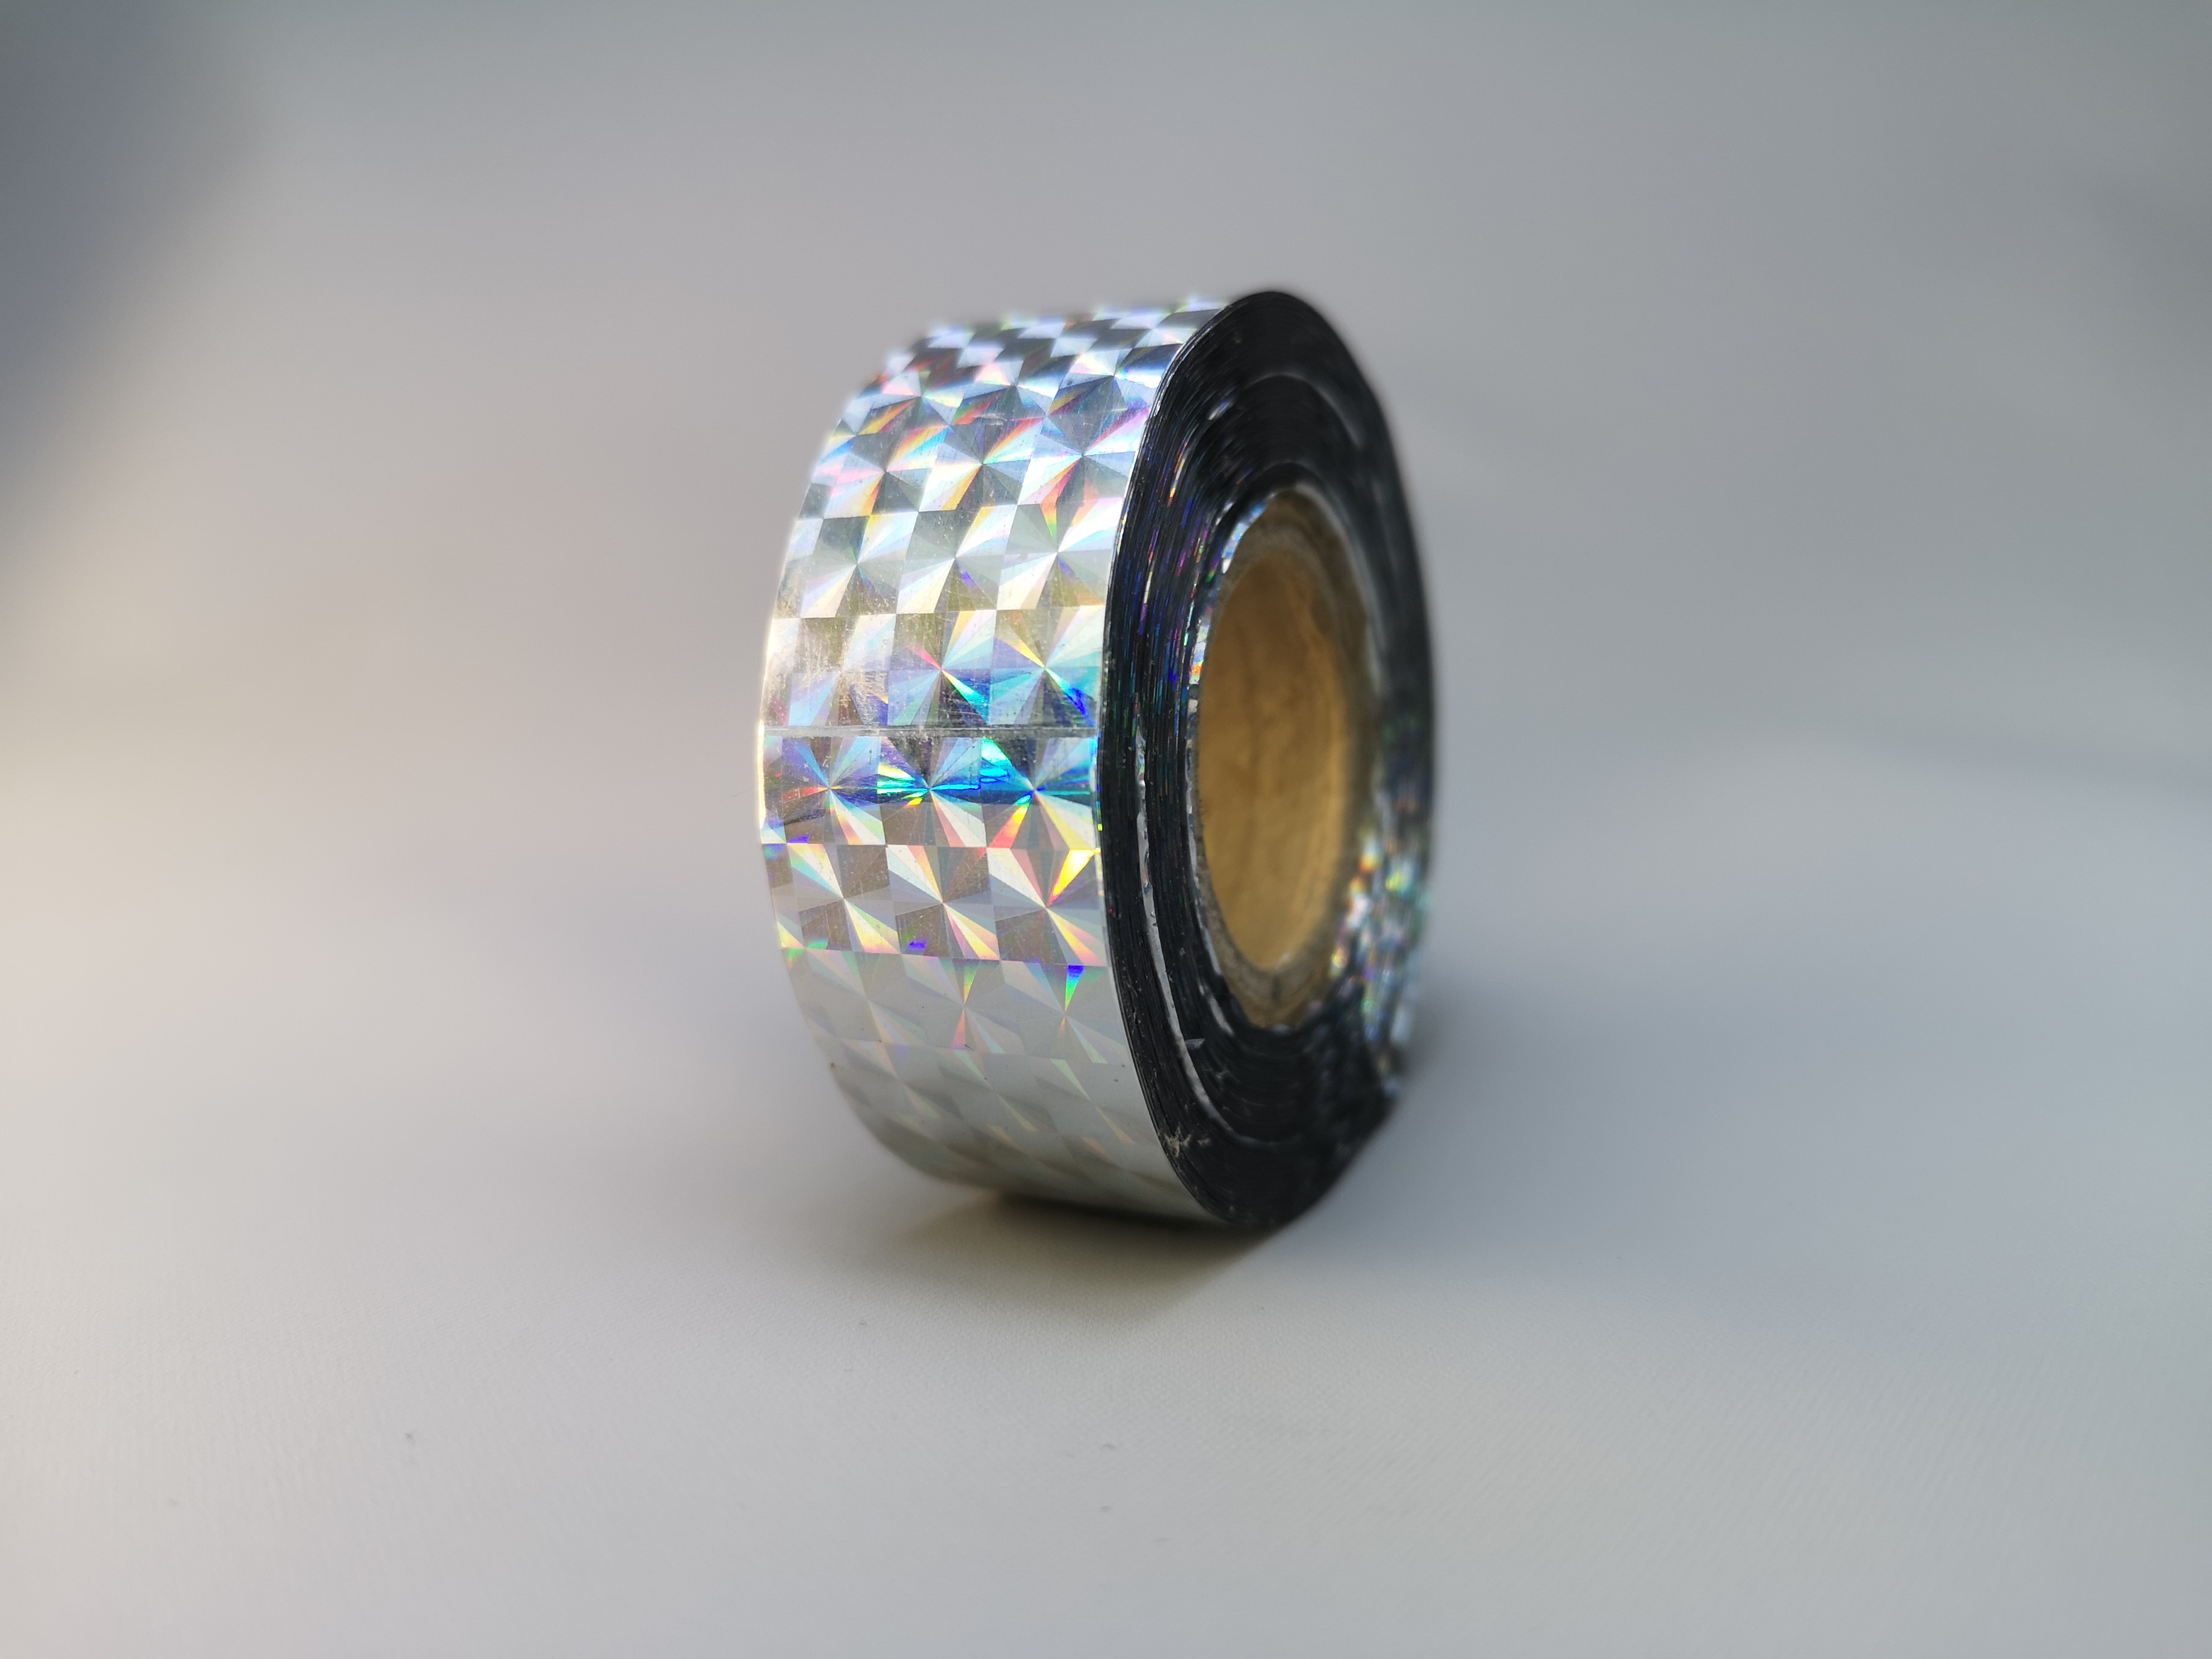 Holografic Prisma Silver 25m Deco-Tape